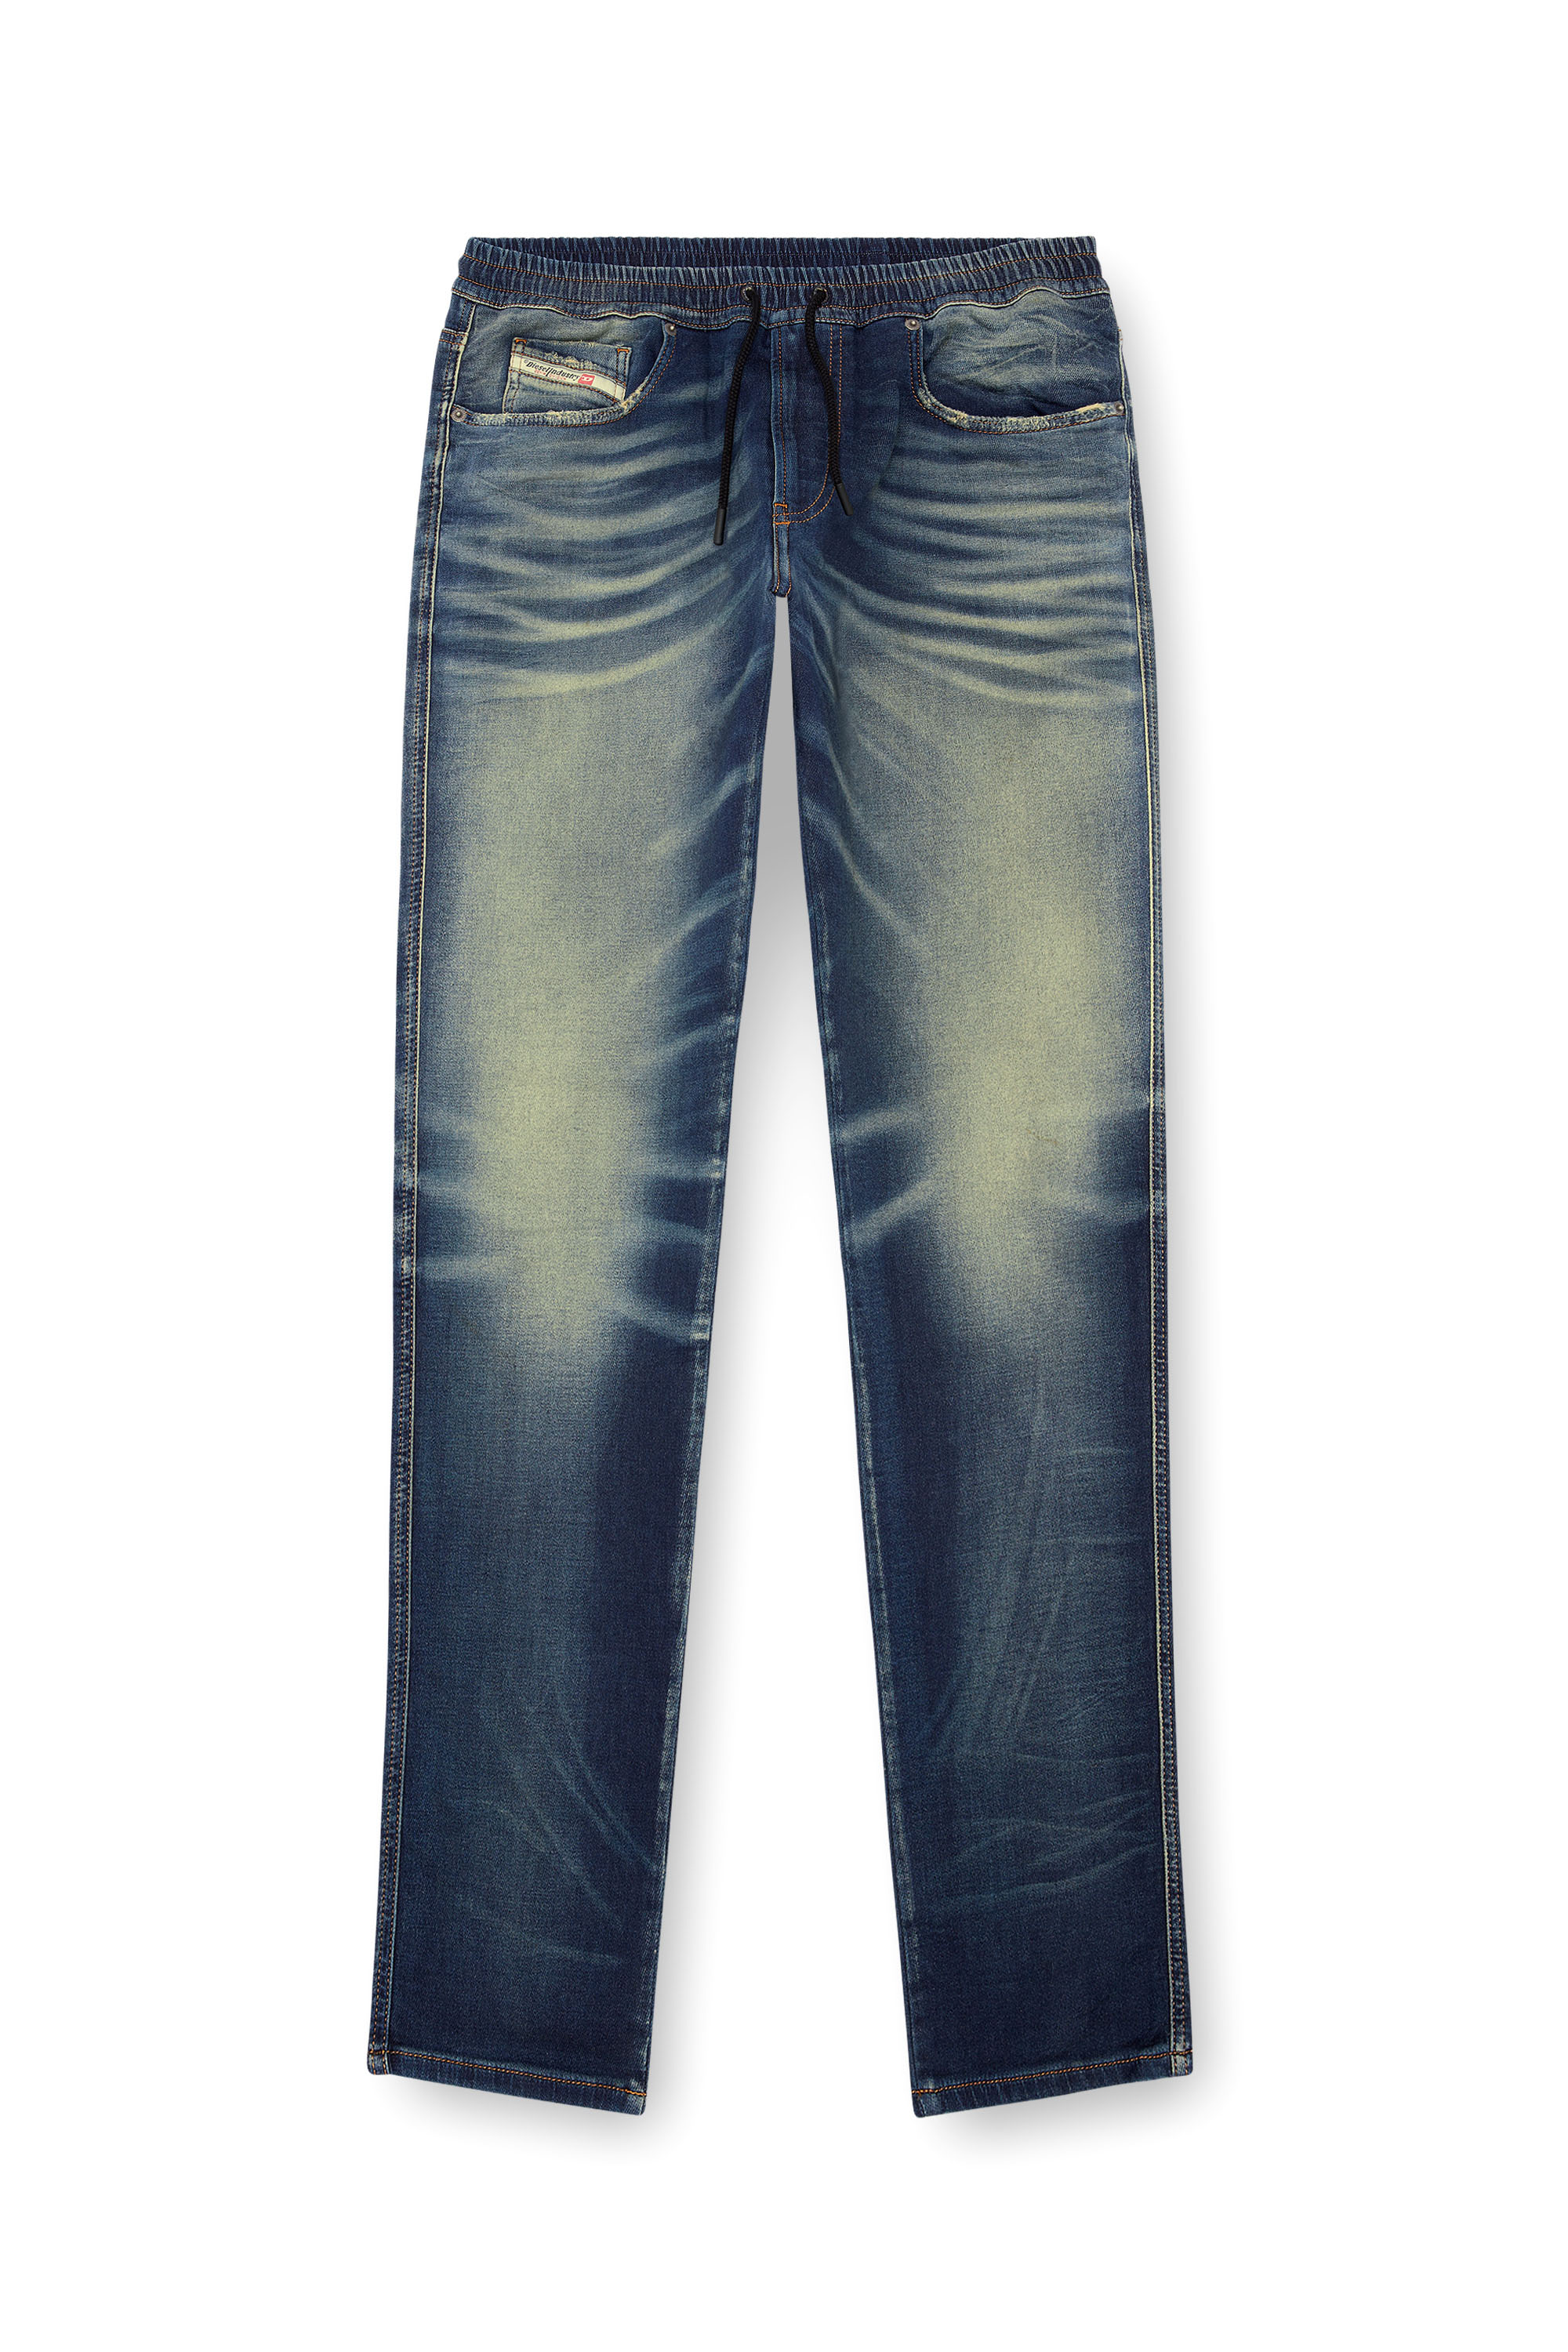 Herren Slim Jeans | Mittelblau | Diesel 2060 D-Strukt Joggjeans®